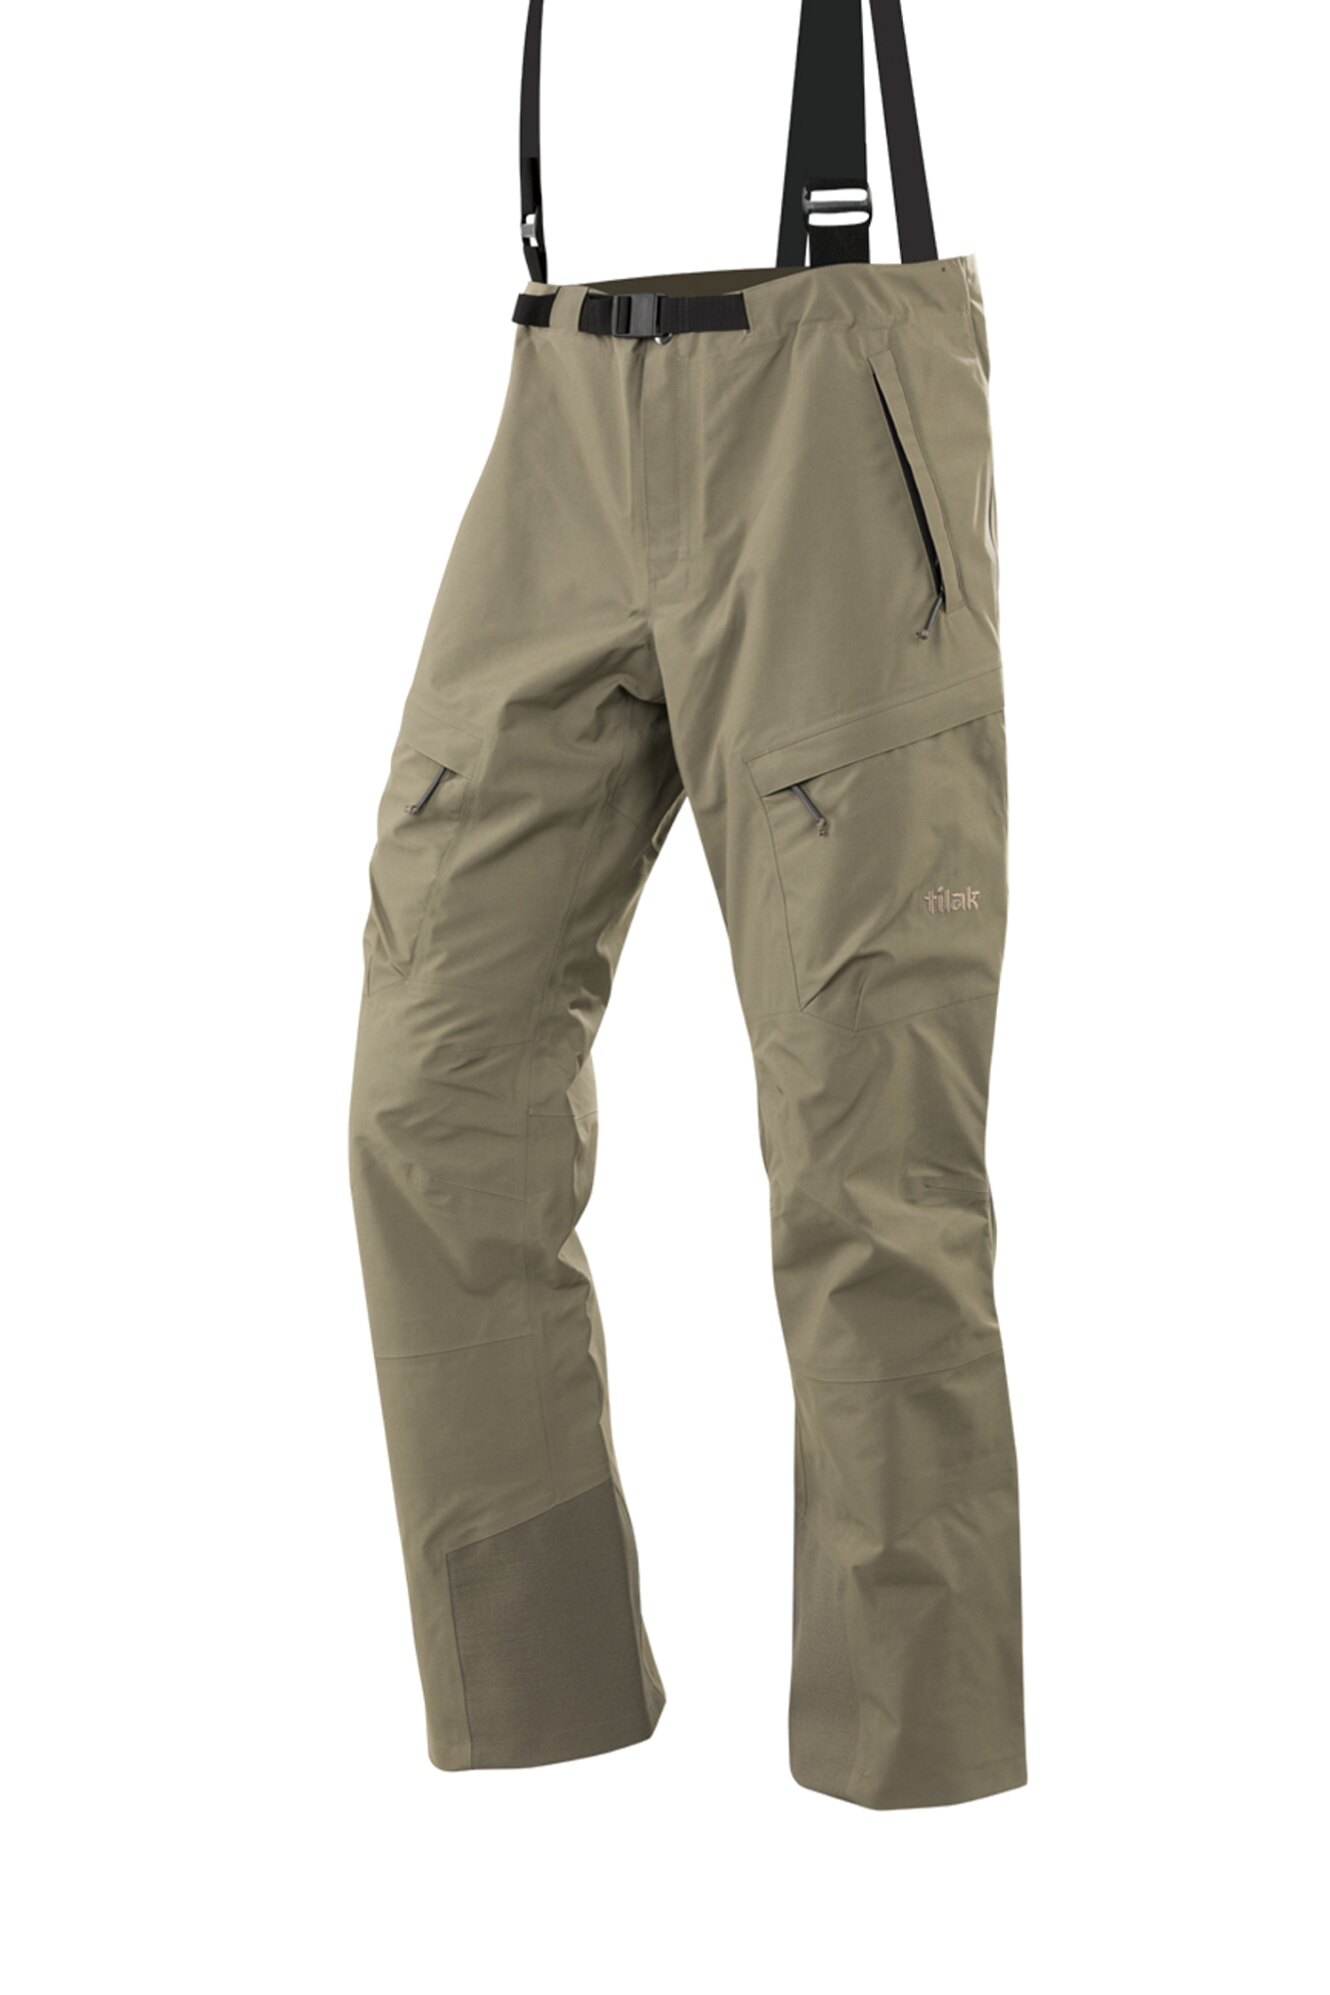 Kalhoty Evolution Gore-Tex® Tilak Military Gear® – Zelená (Barva: Zelená, Velikost: L)